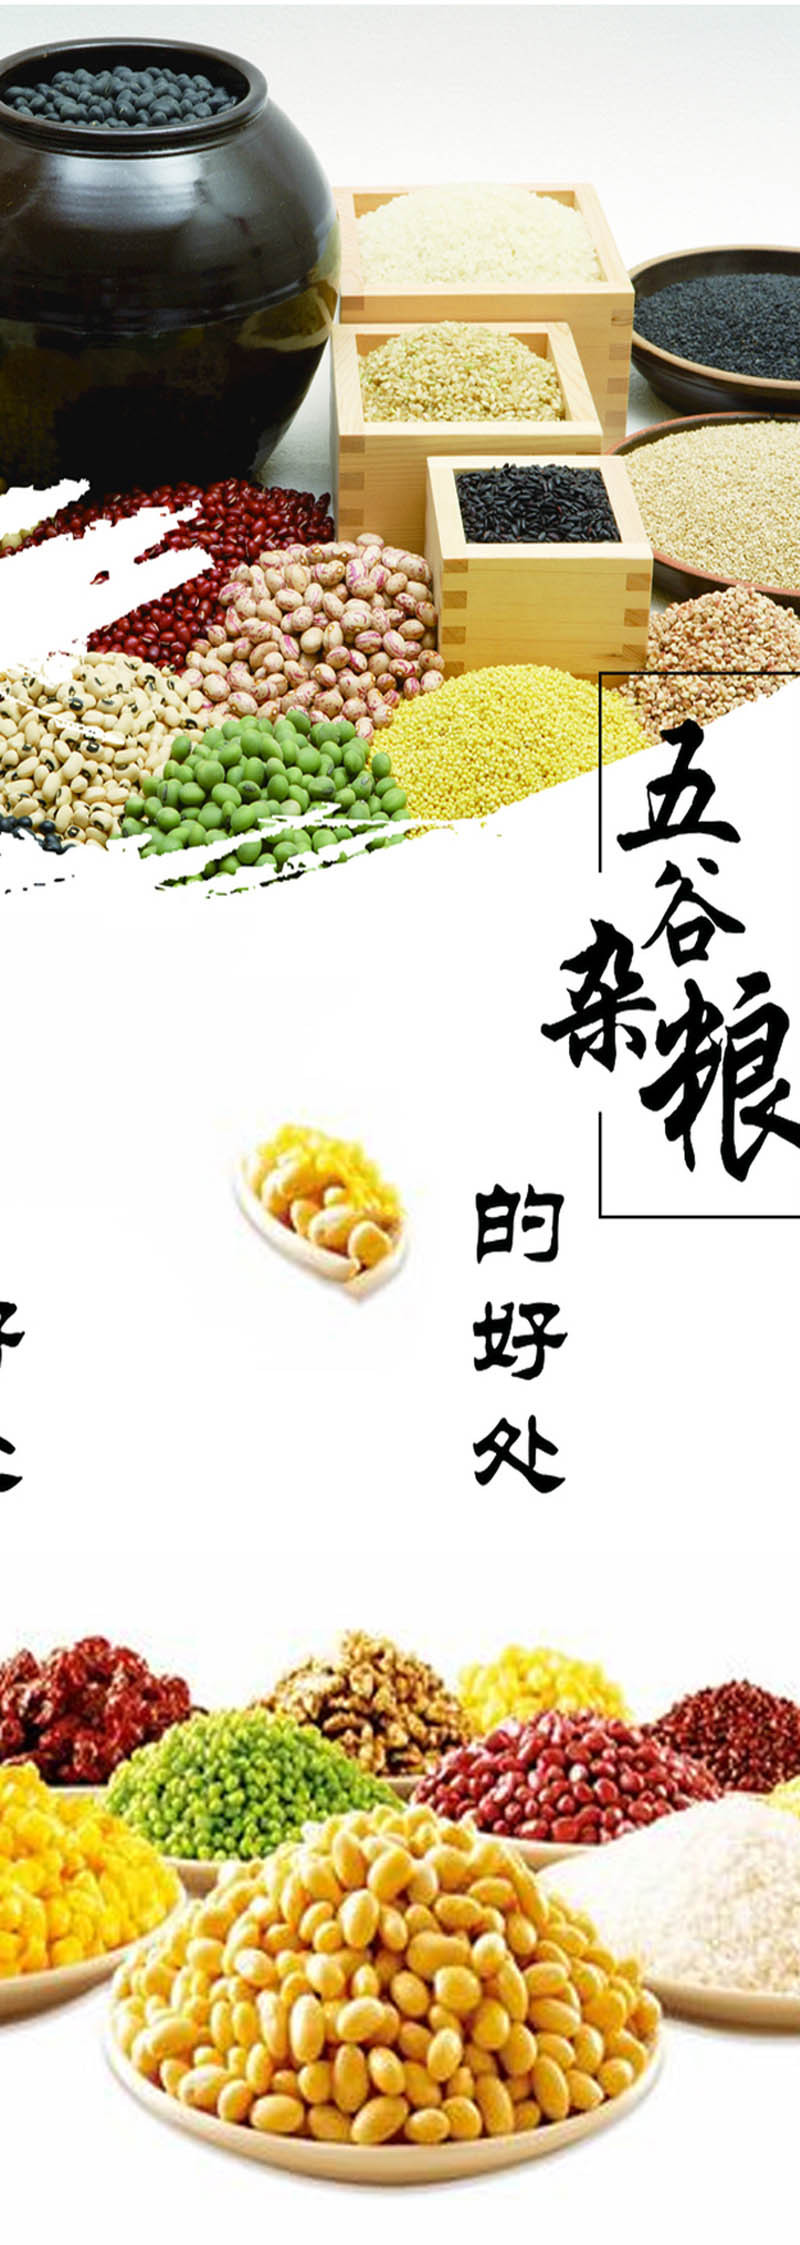  洛阳农品 手绘小镇 五谷杂粮2.5kg嵩县农家特产有机杂粮粥米组合